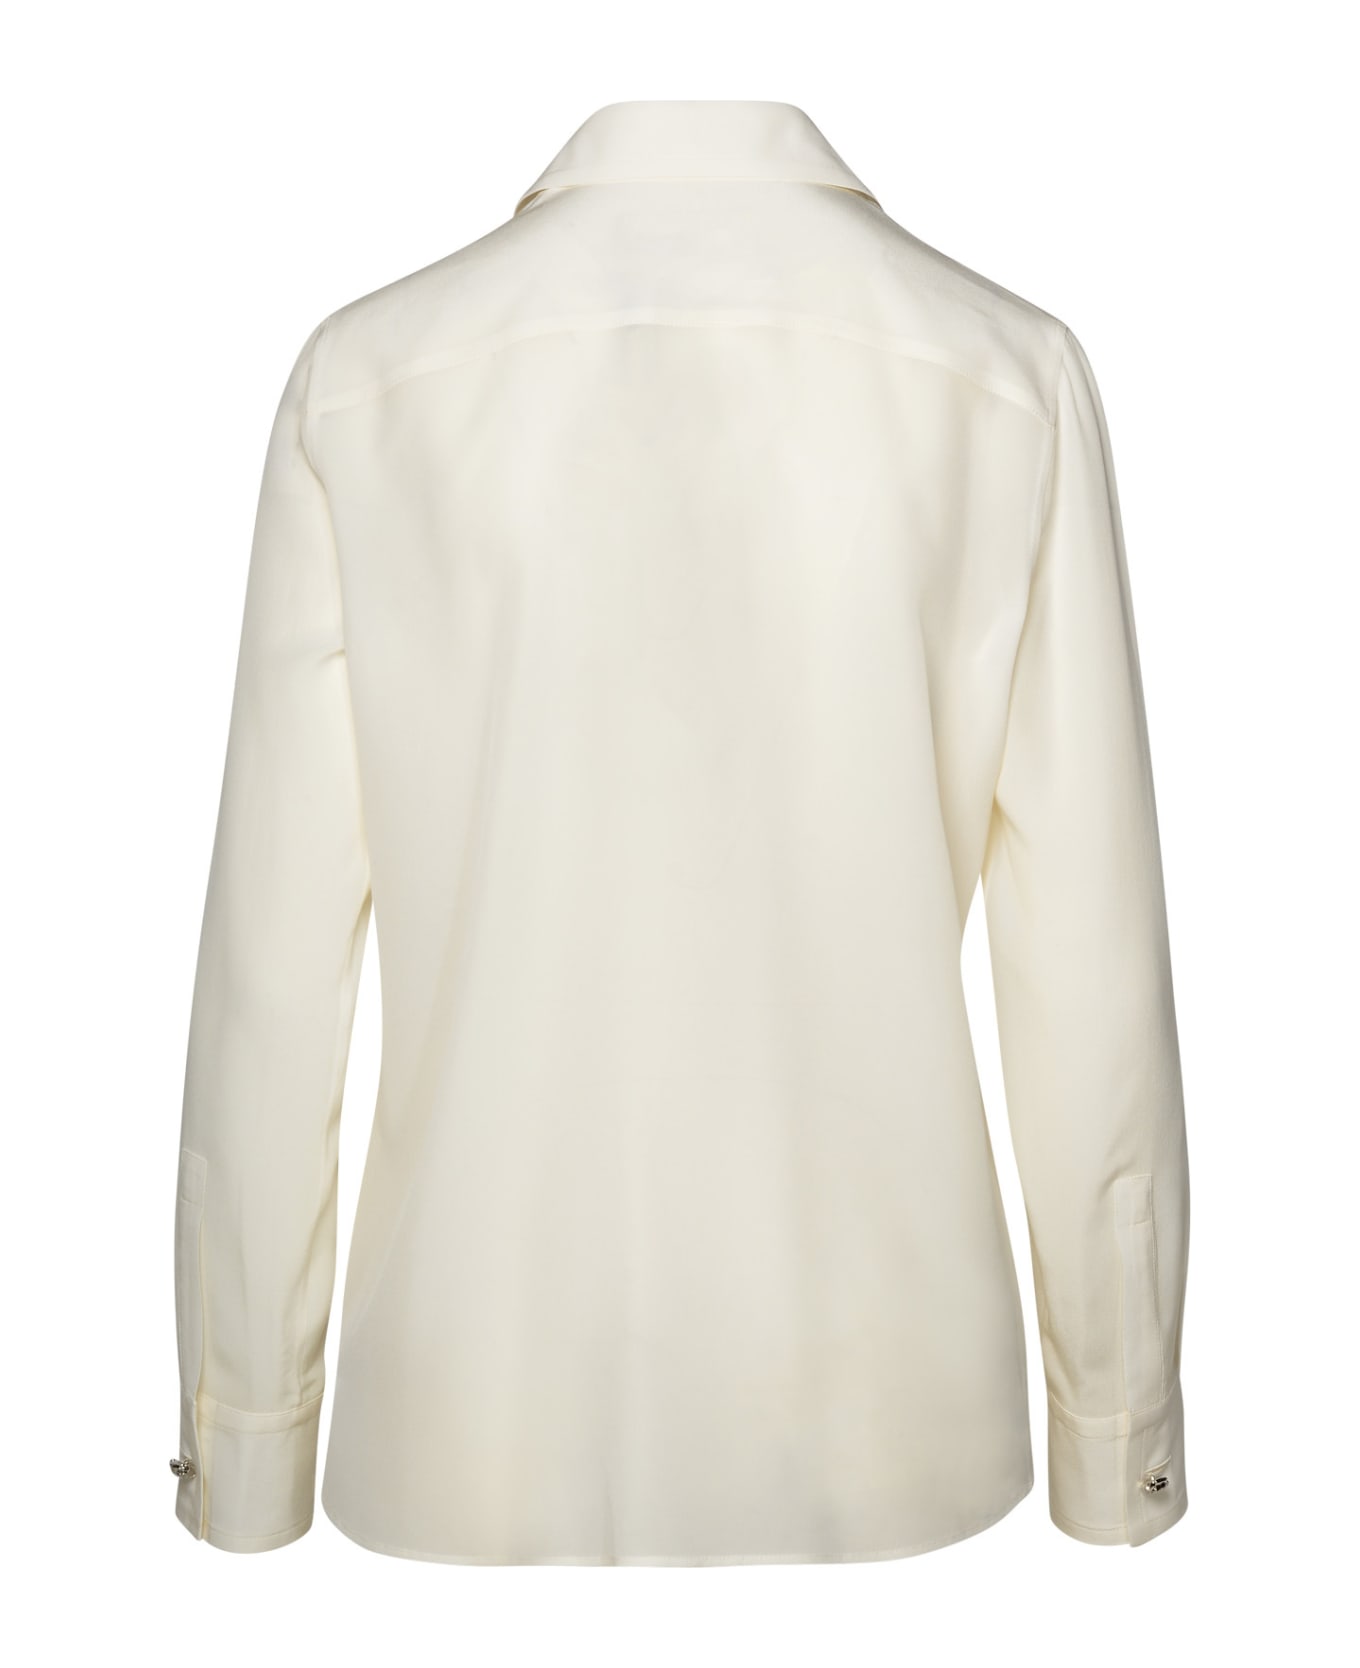 Lanvin White Silk Shirt - White シャツ